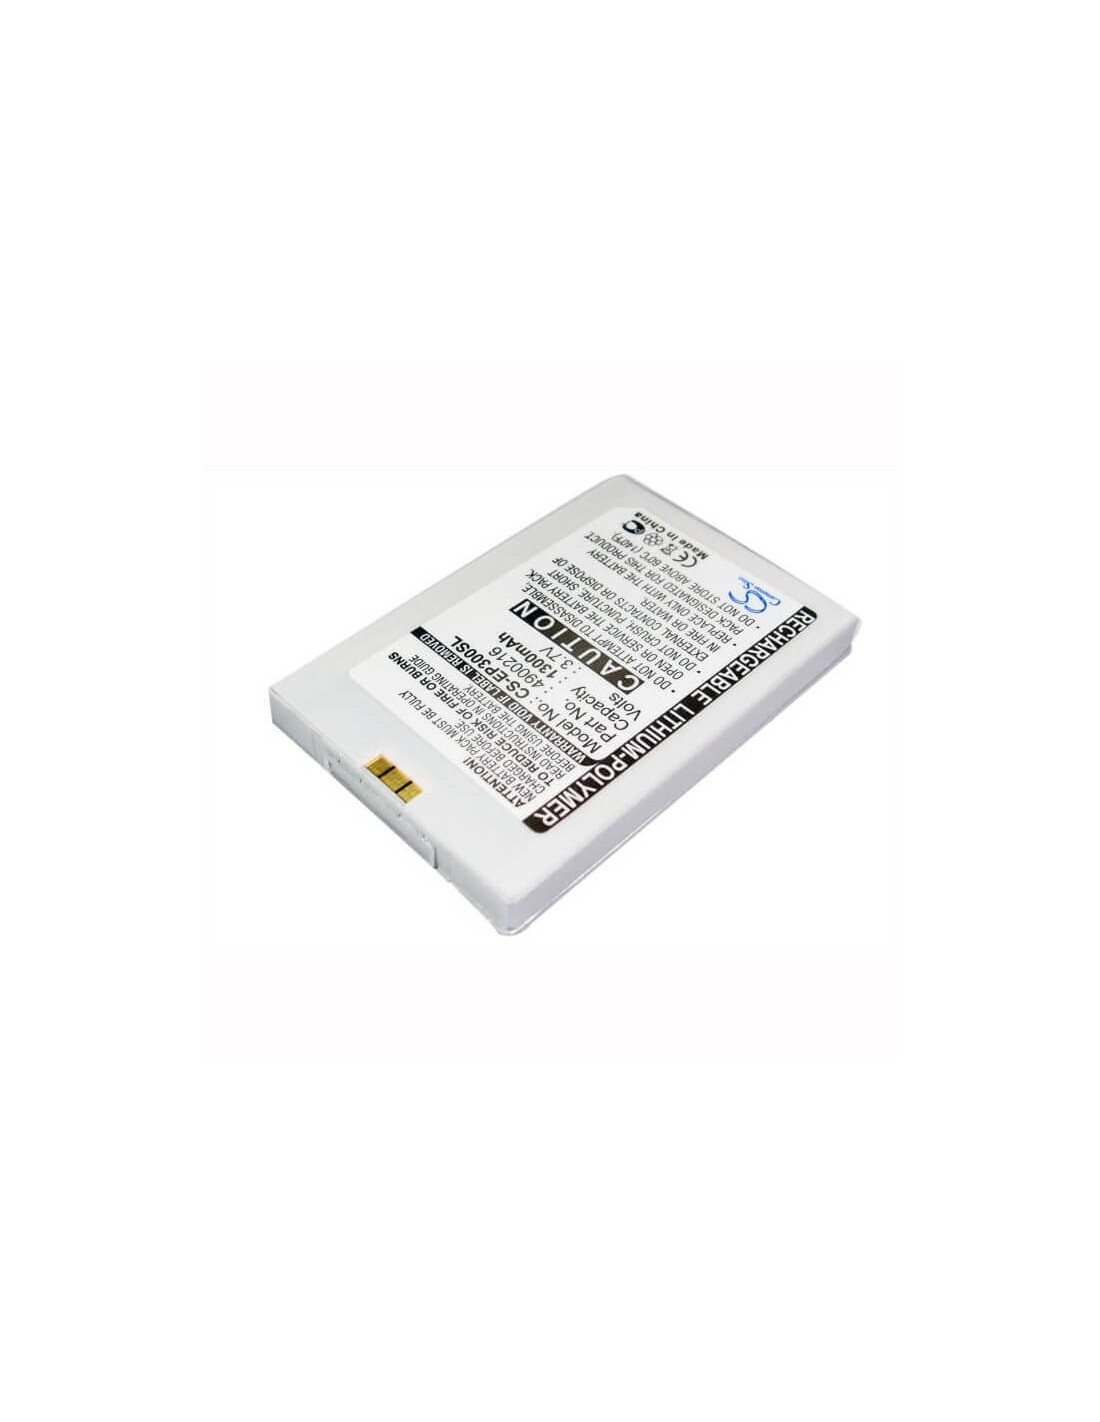 Battery for BlueMedia PDA BM-6280 3.7V, 1300mAh - 4.81Wh